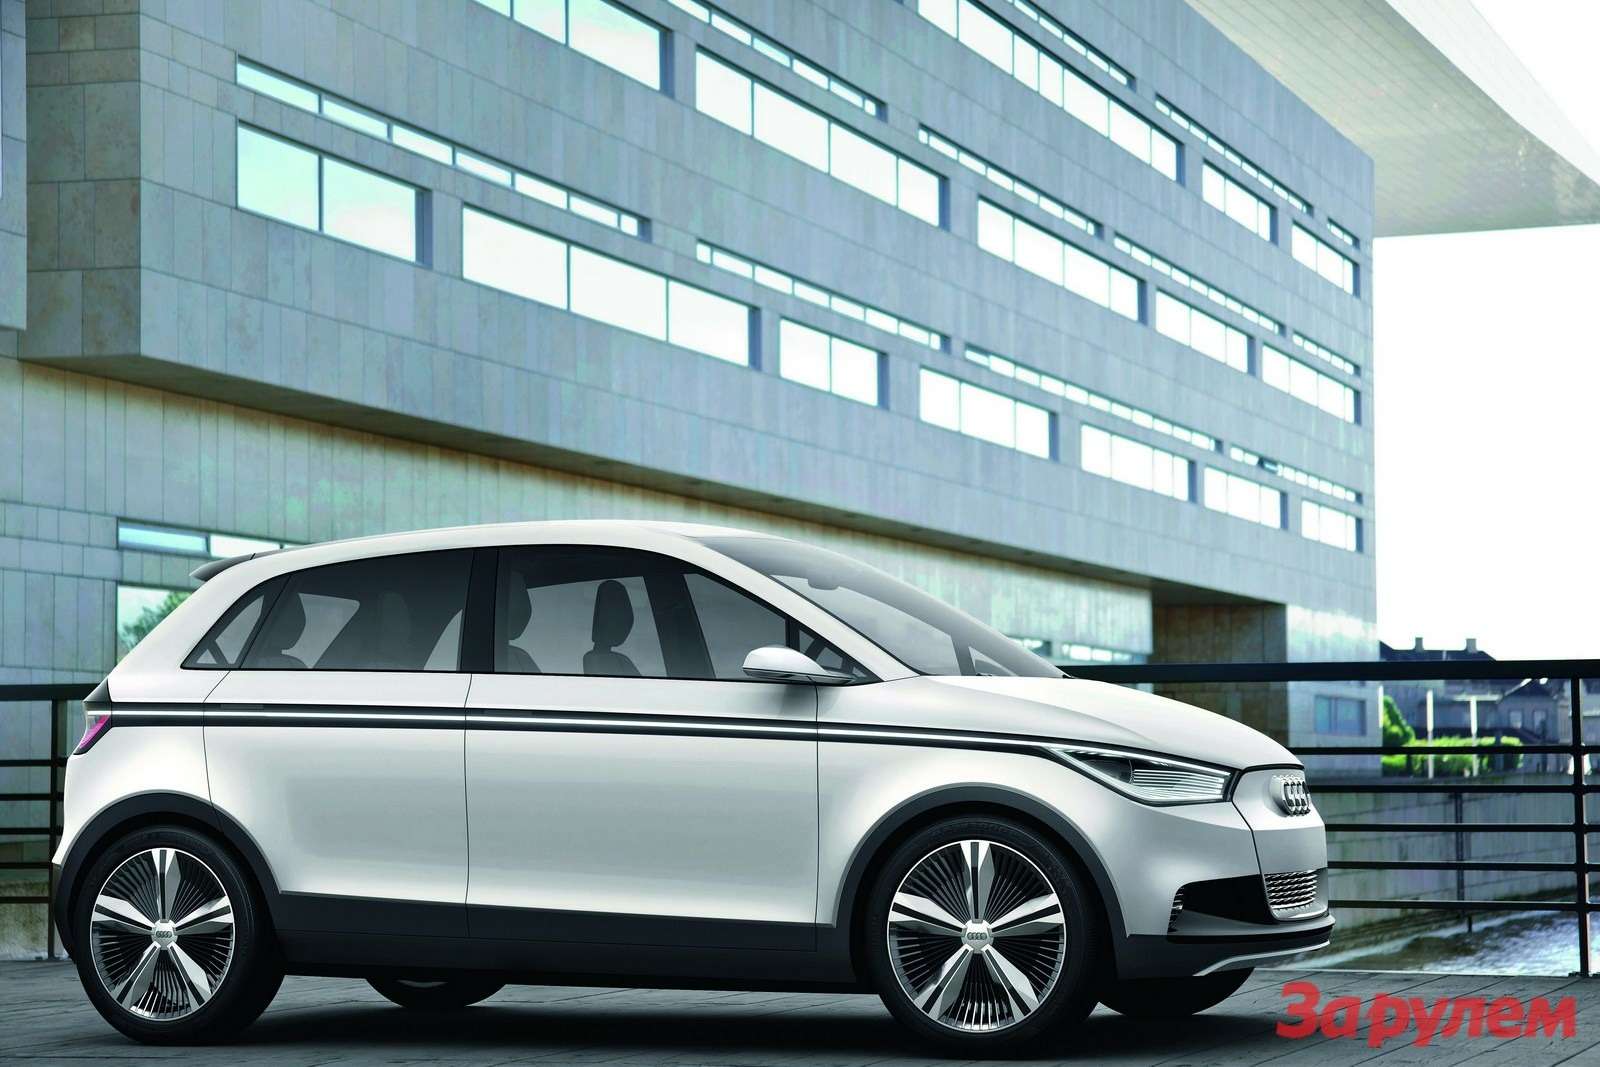 Audi_A2-Concept-5